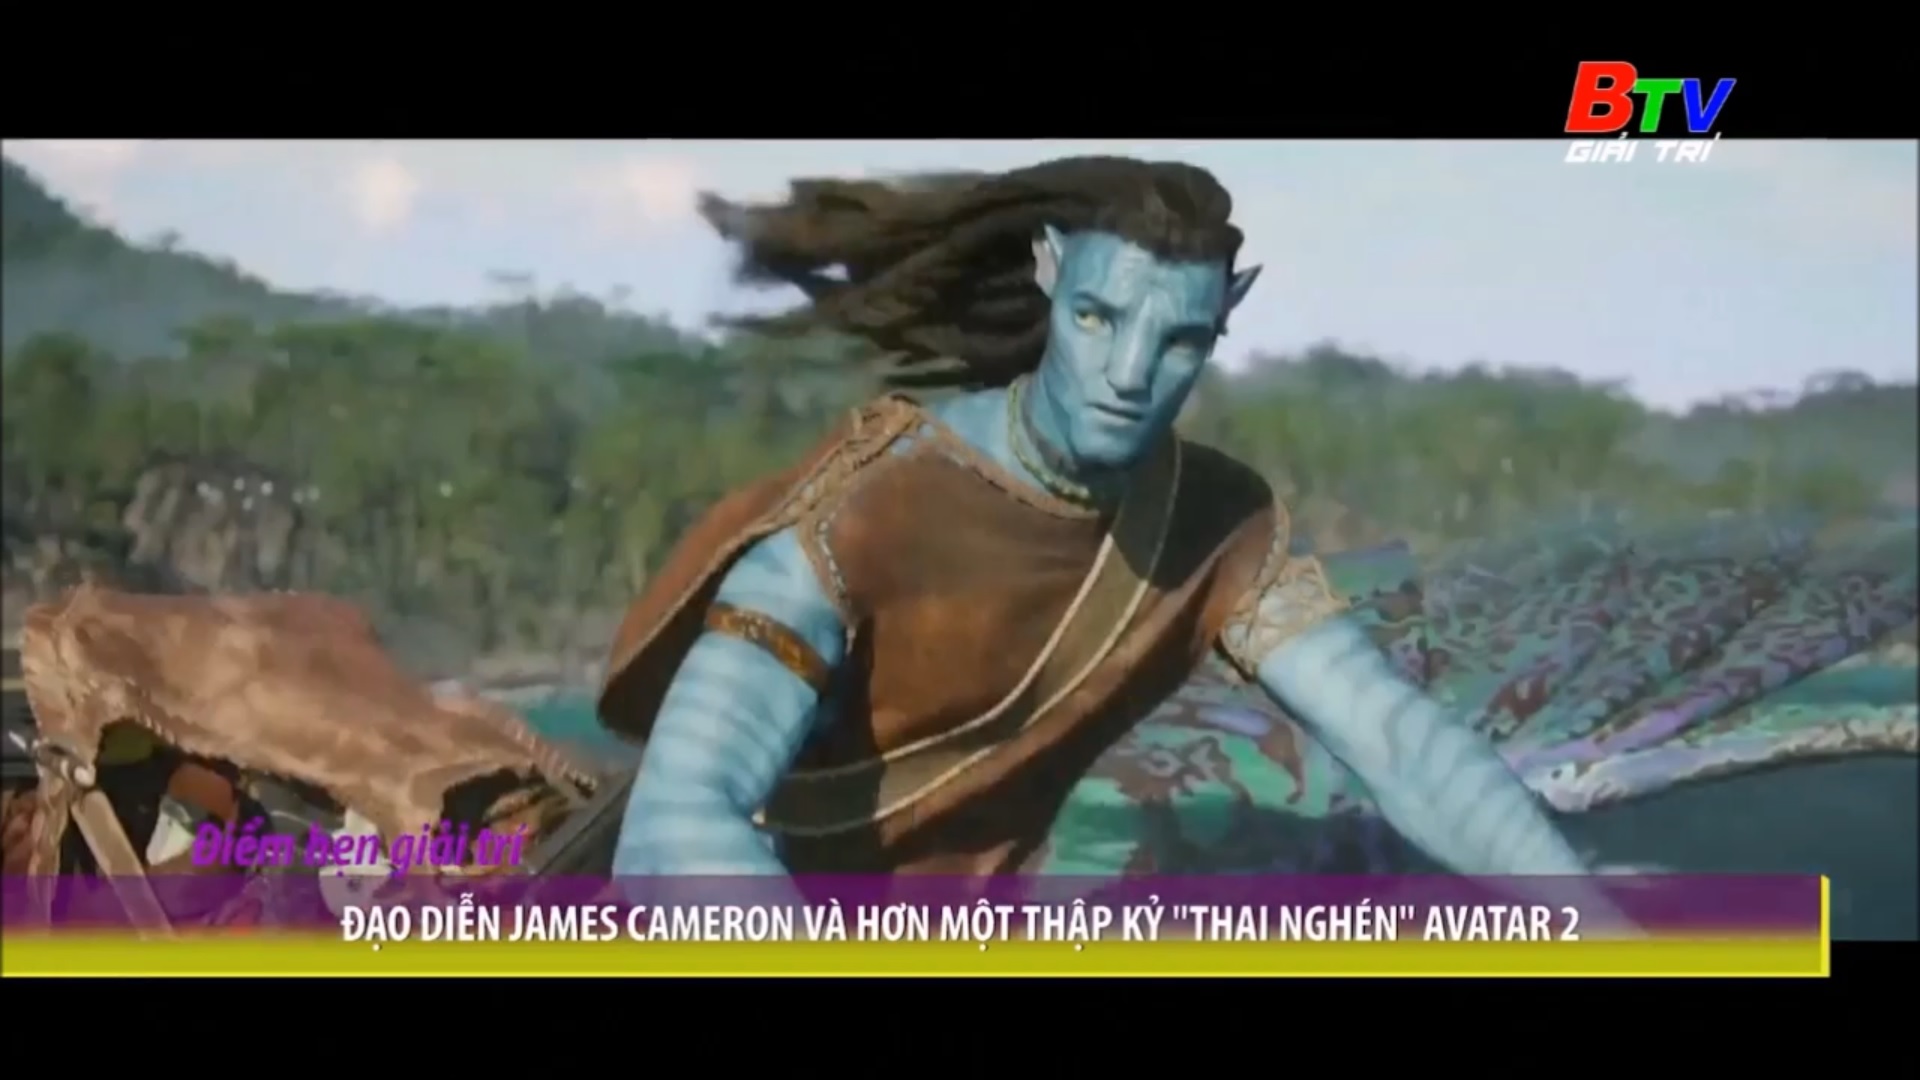 Đạo diễn James Cameron và hơn một thập kỷ “Thai nghén” Avatar 2